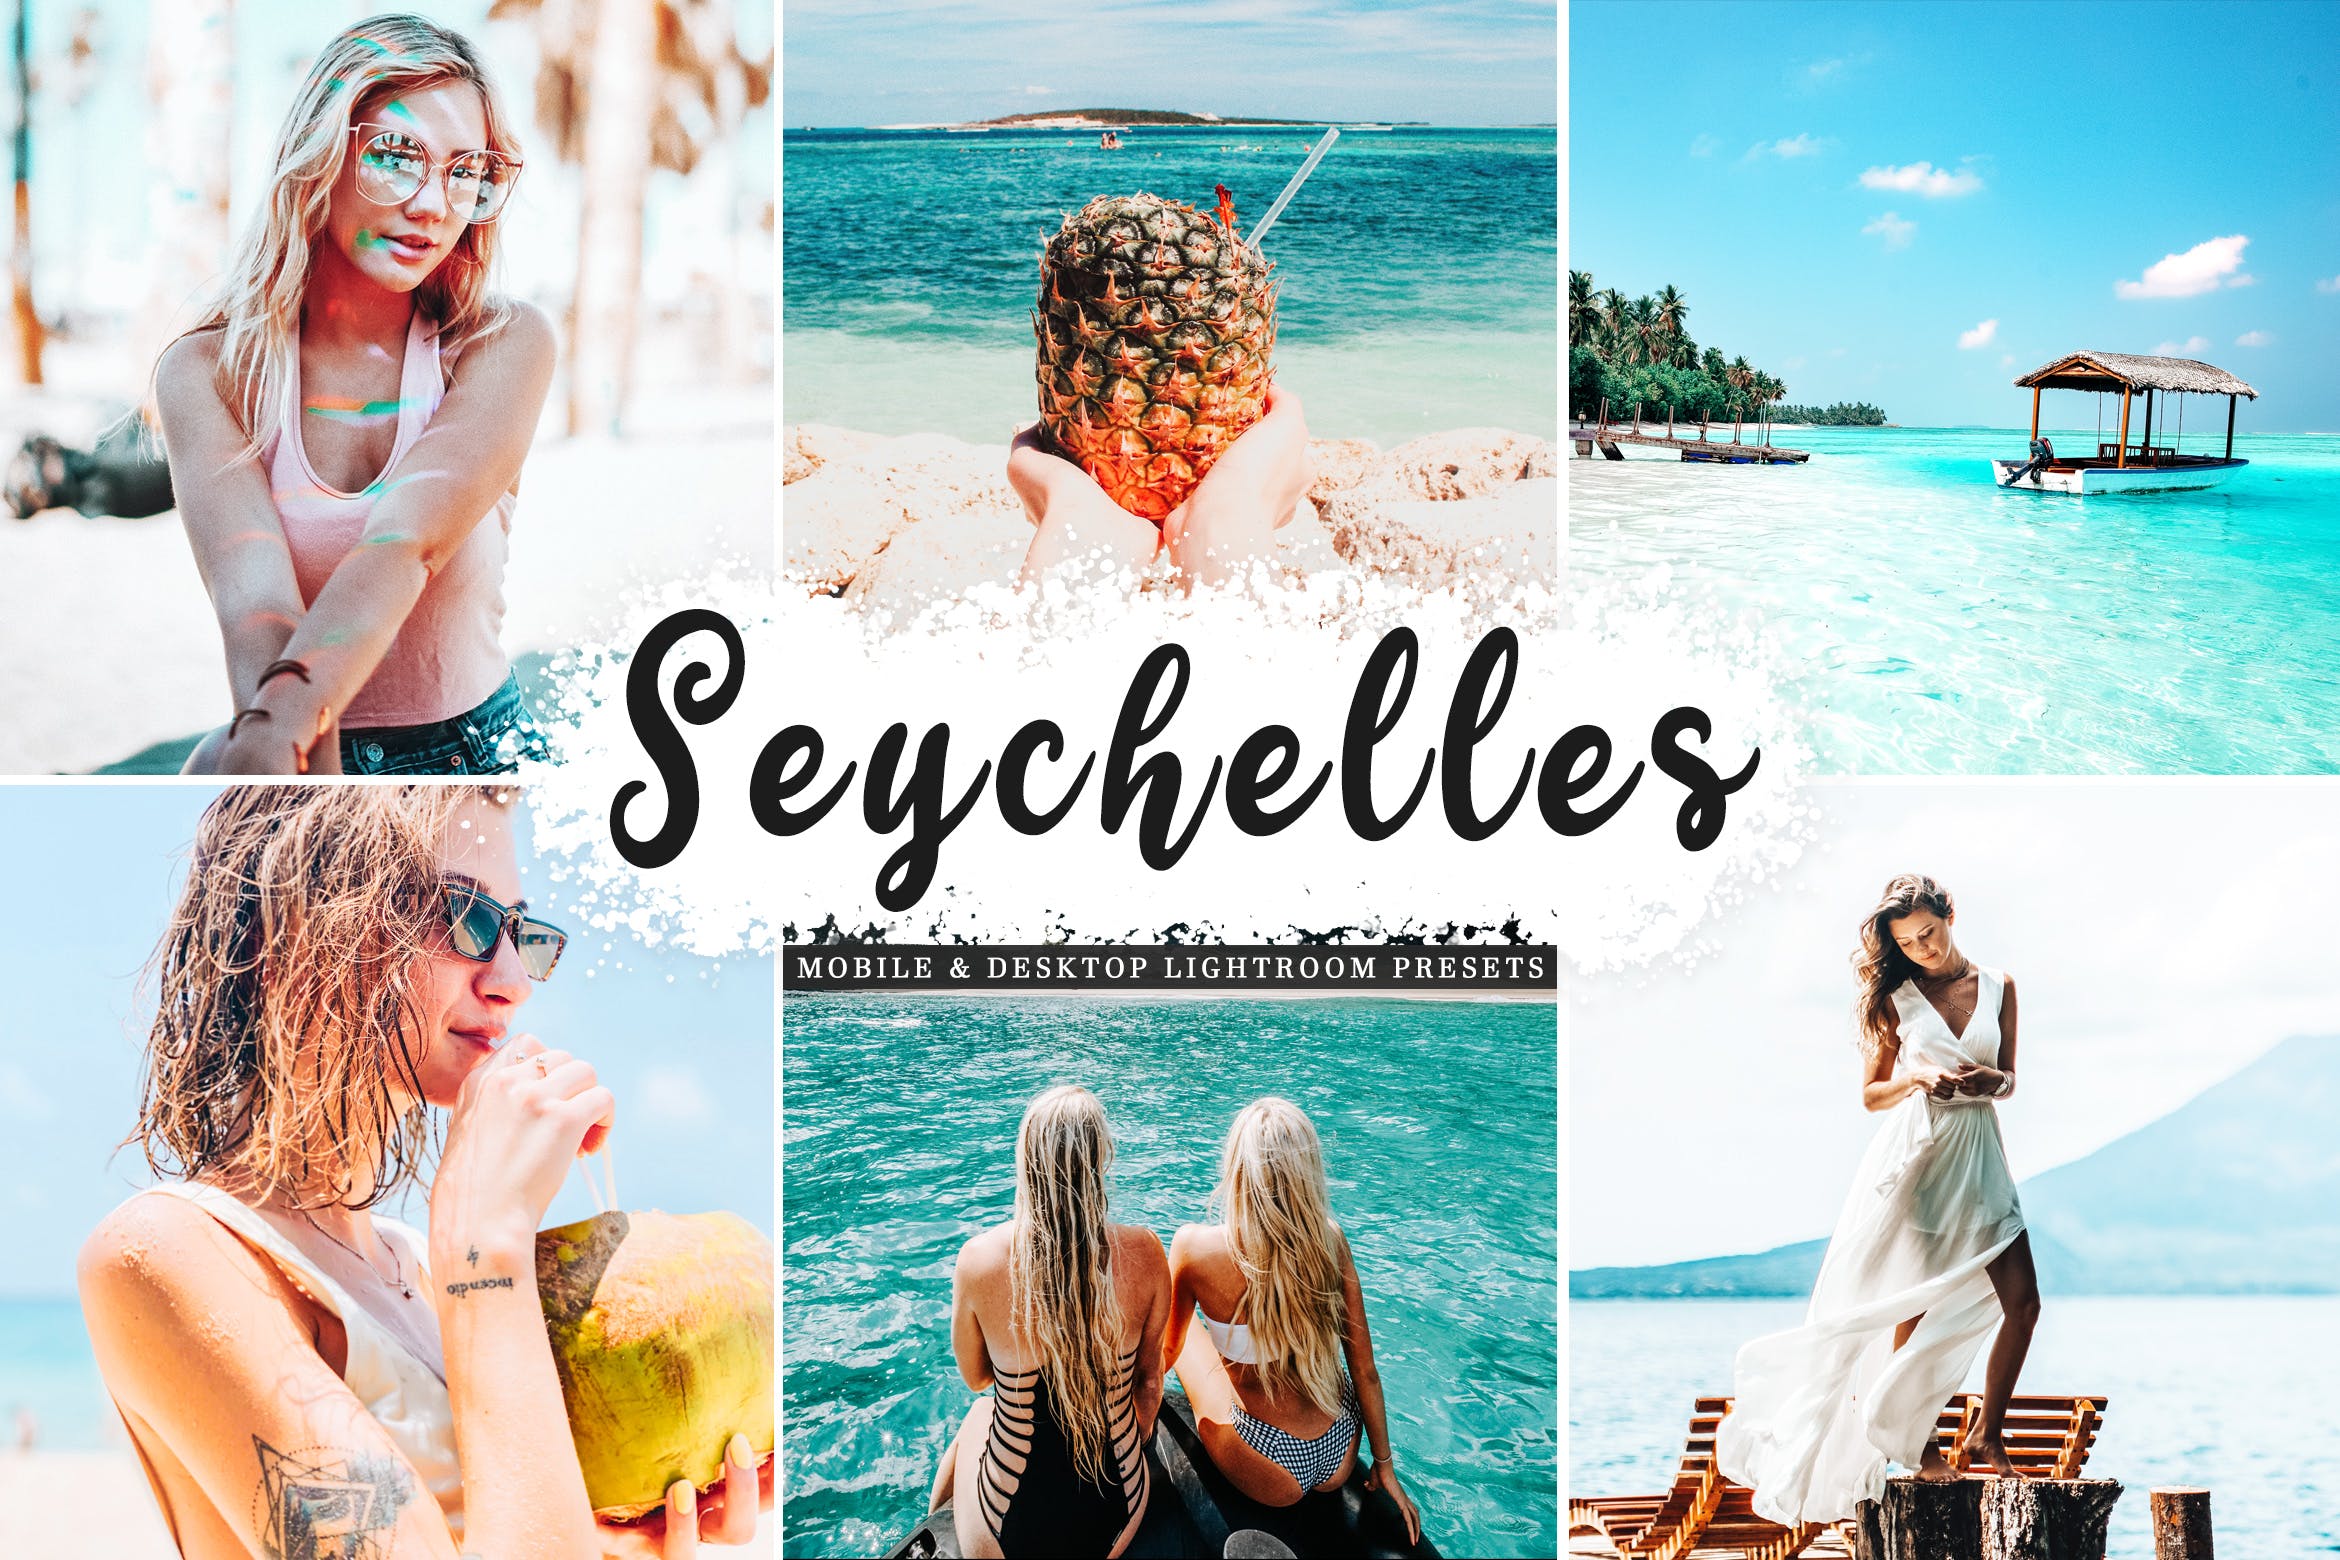 摄影大师必备明亮自然鲜艳色调照片处理16图库精选LR预设 Seychelles Mobile & Desktop Lightroom Presets插图